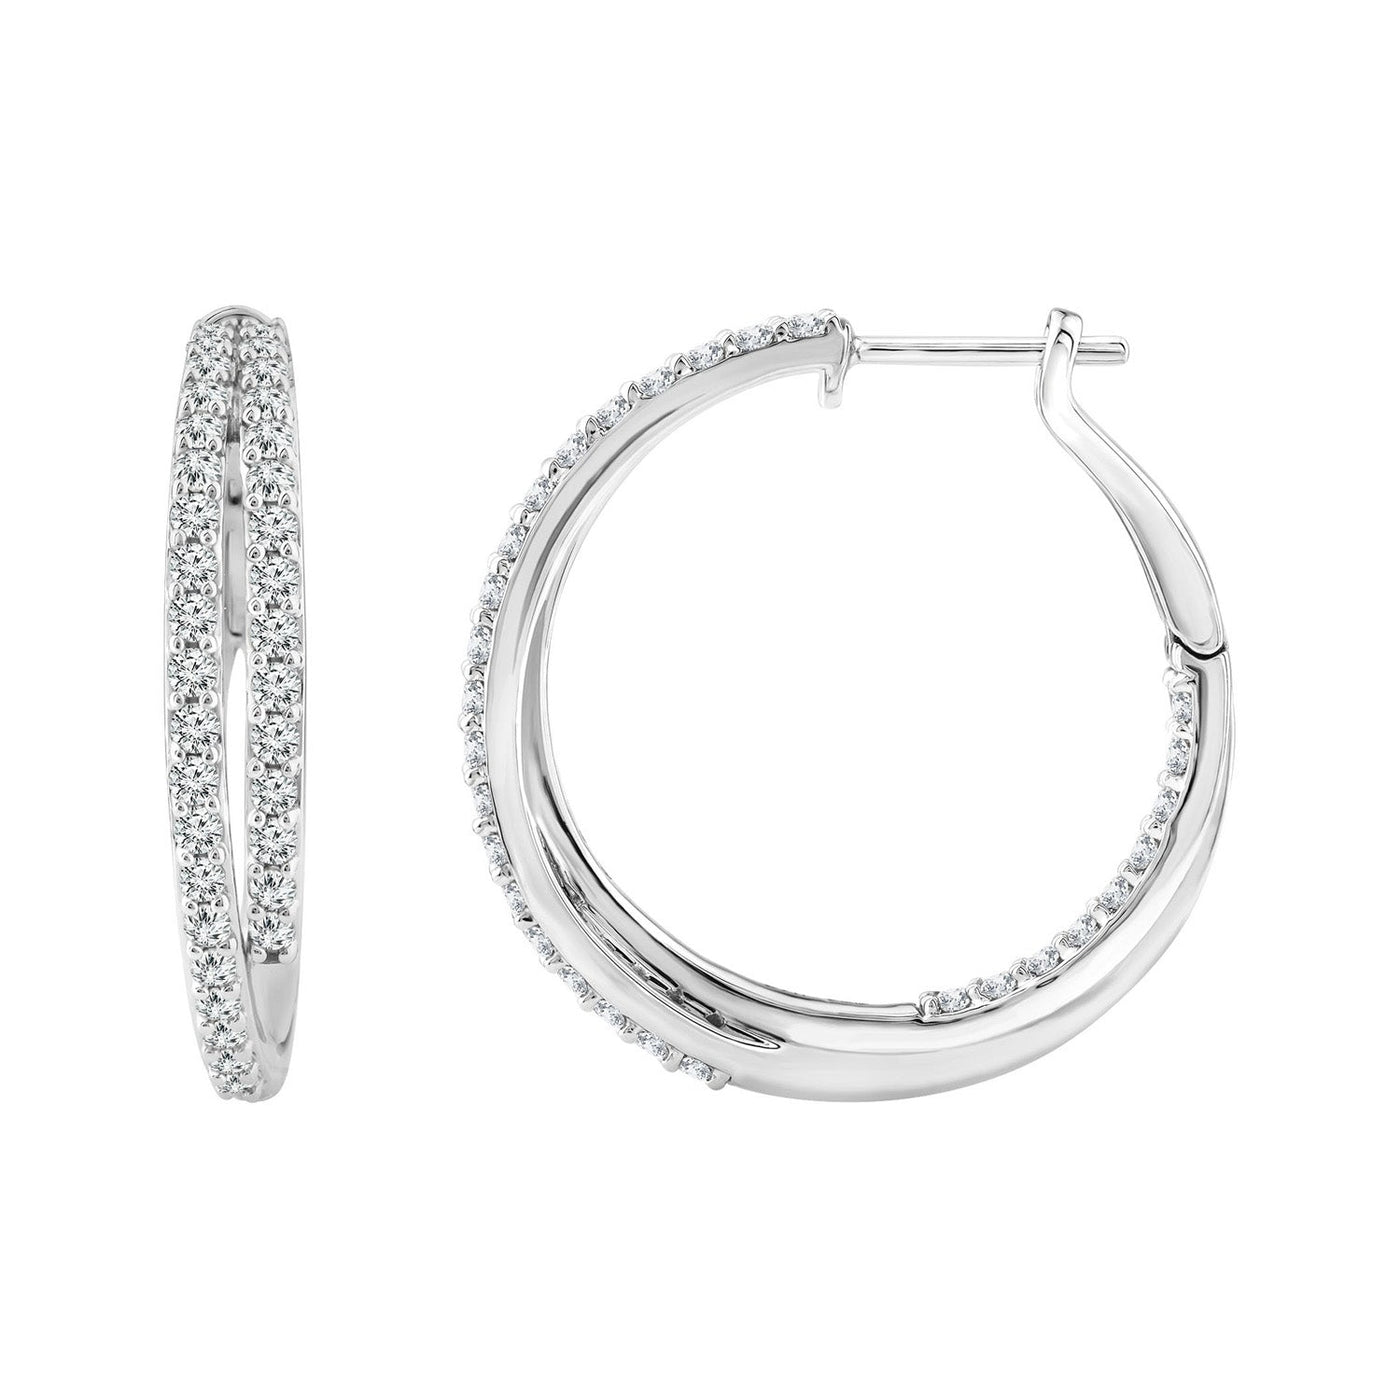 1.95ct Lab Grown Diamond Hoop Earrings in 18K White Gold